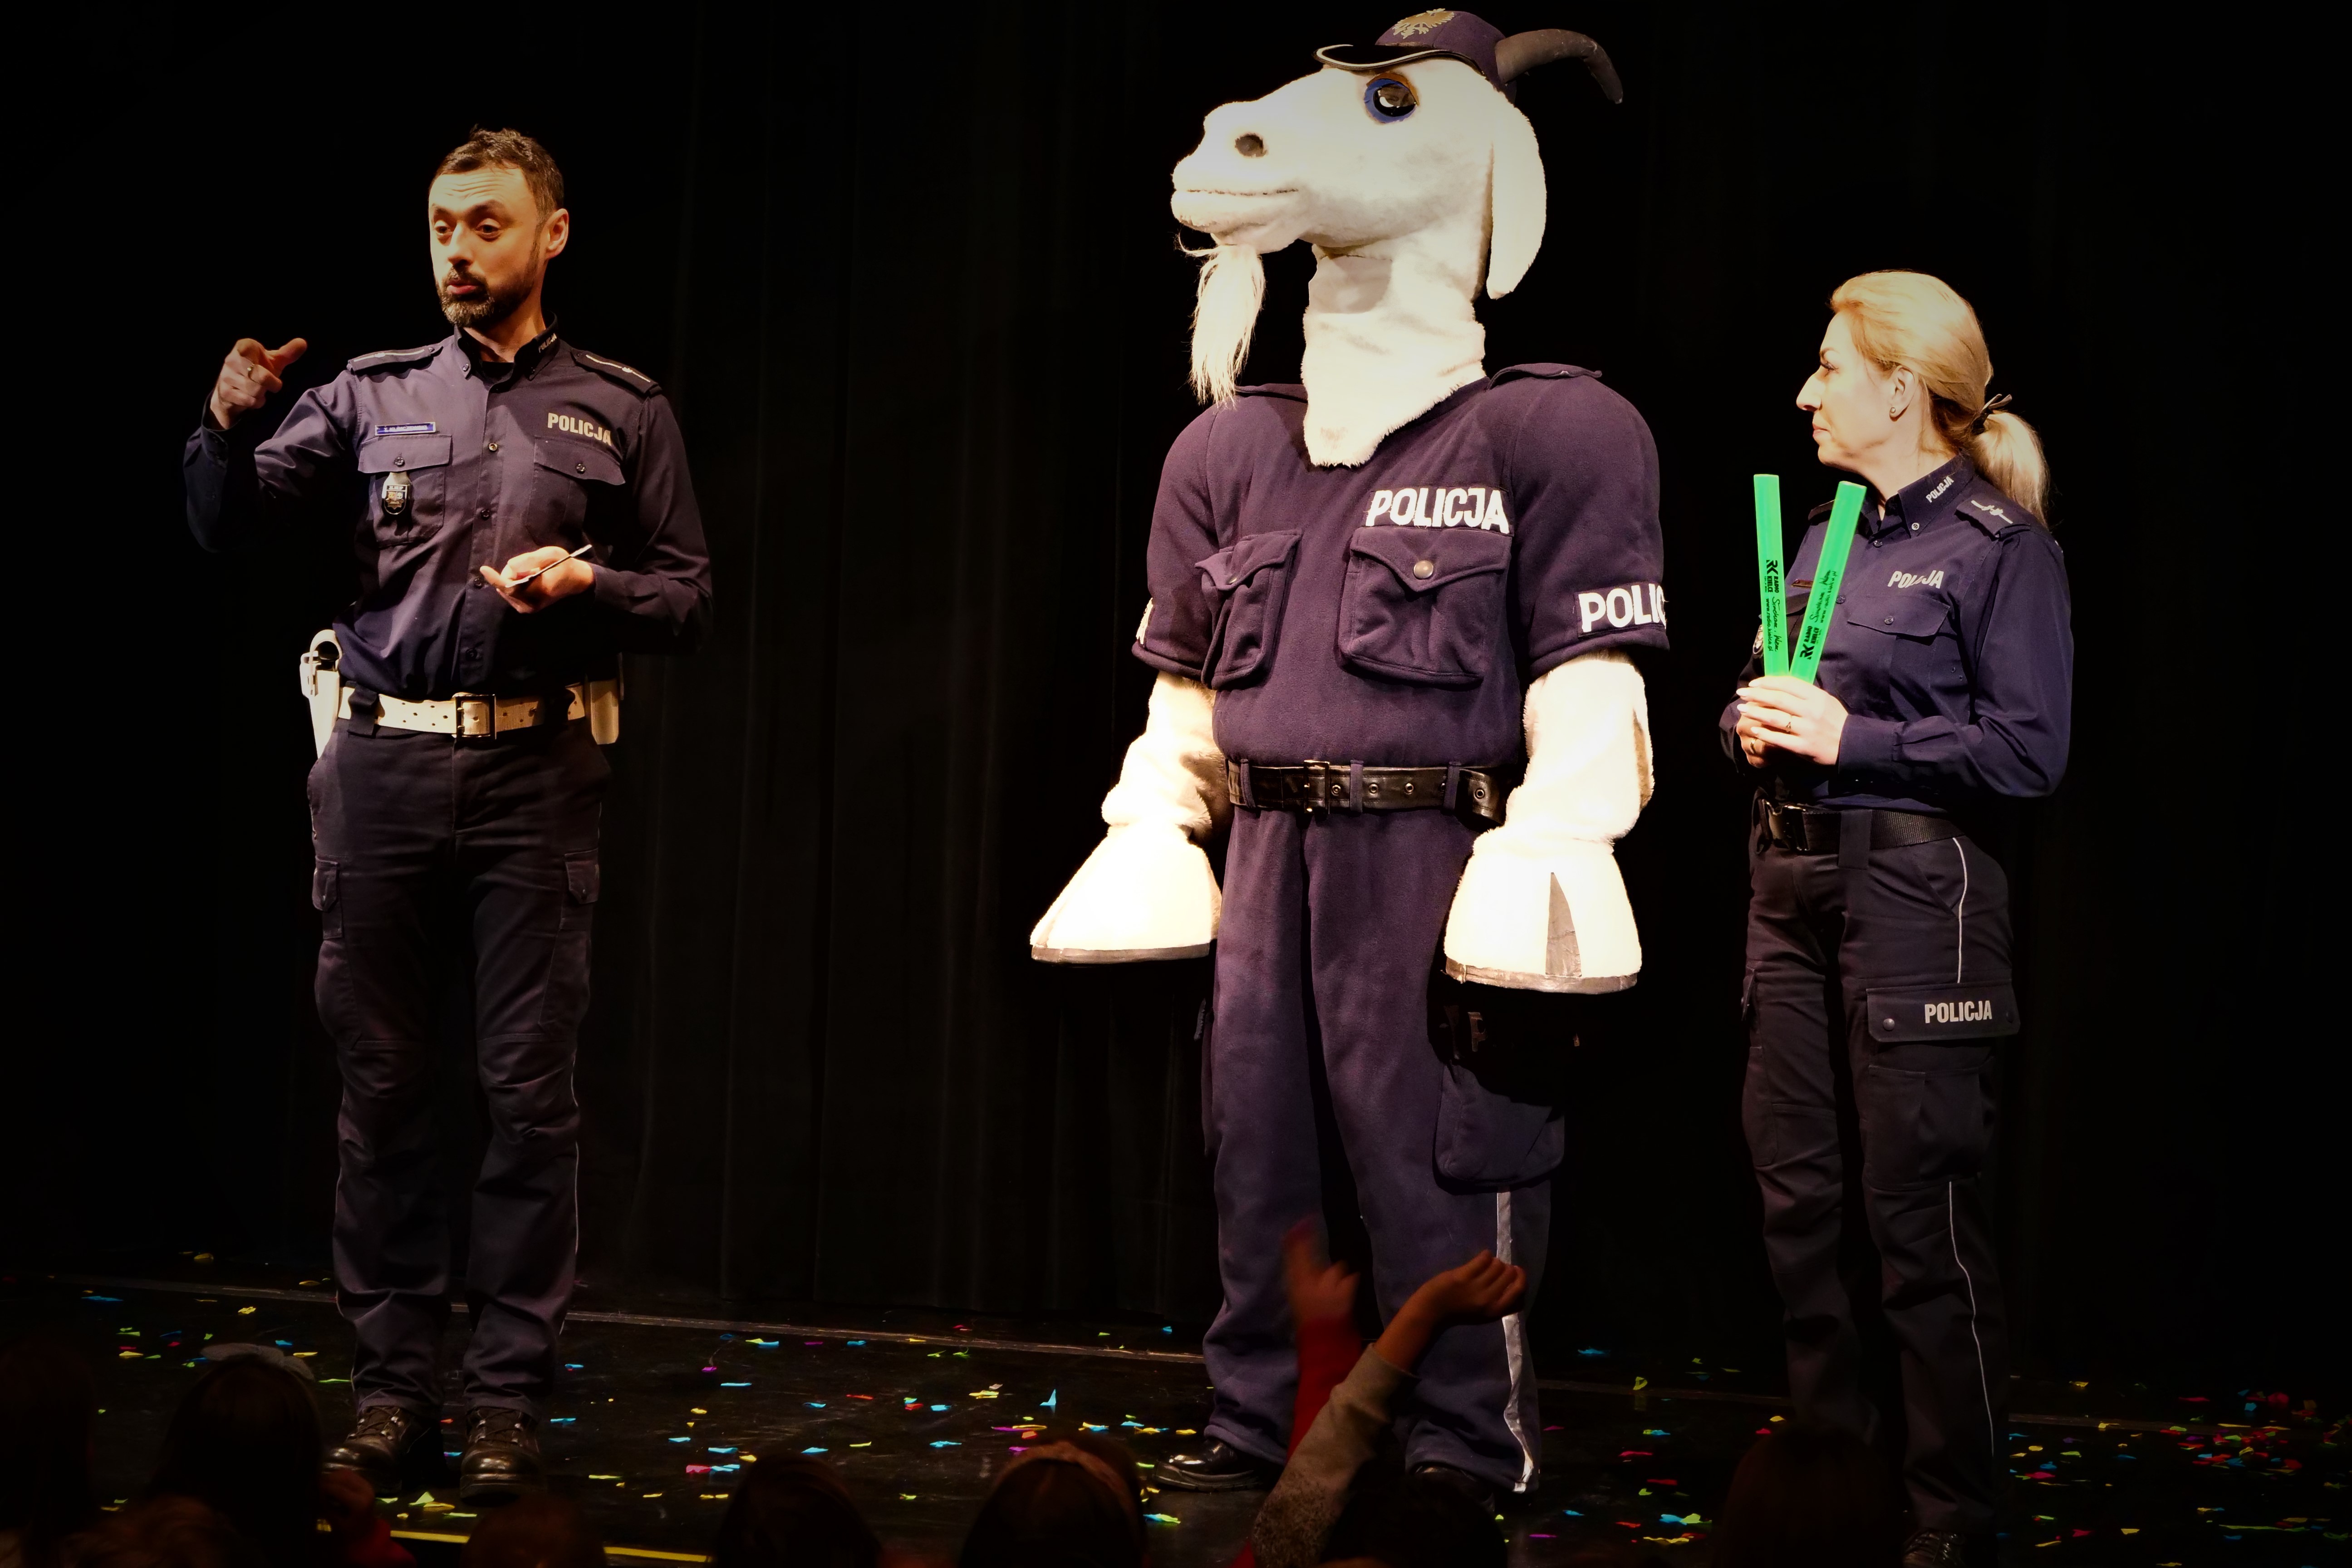 Maskotka policji świętokrzyskie "Koziołek Spoko" w towarzystwie dwójki policjantów.